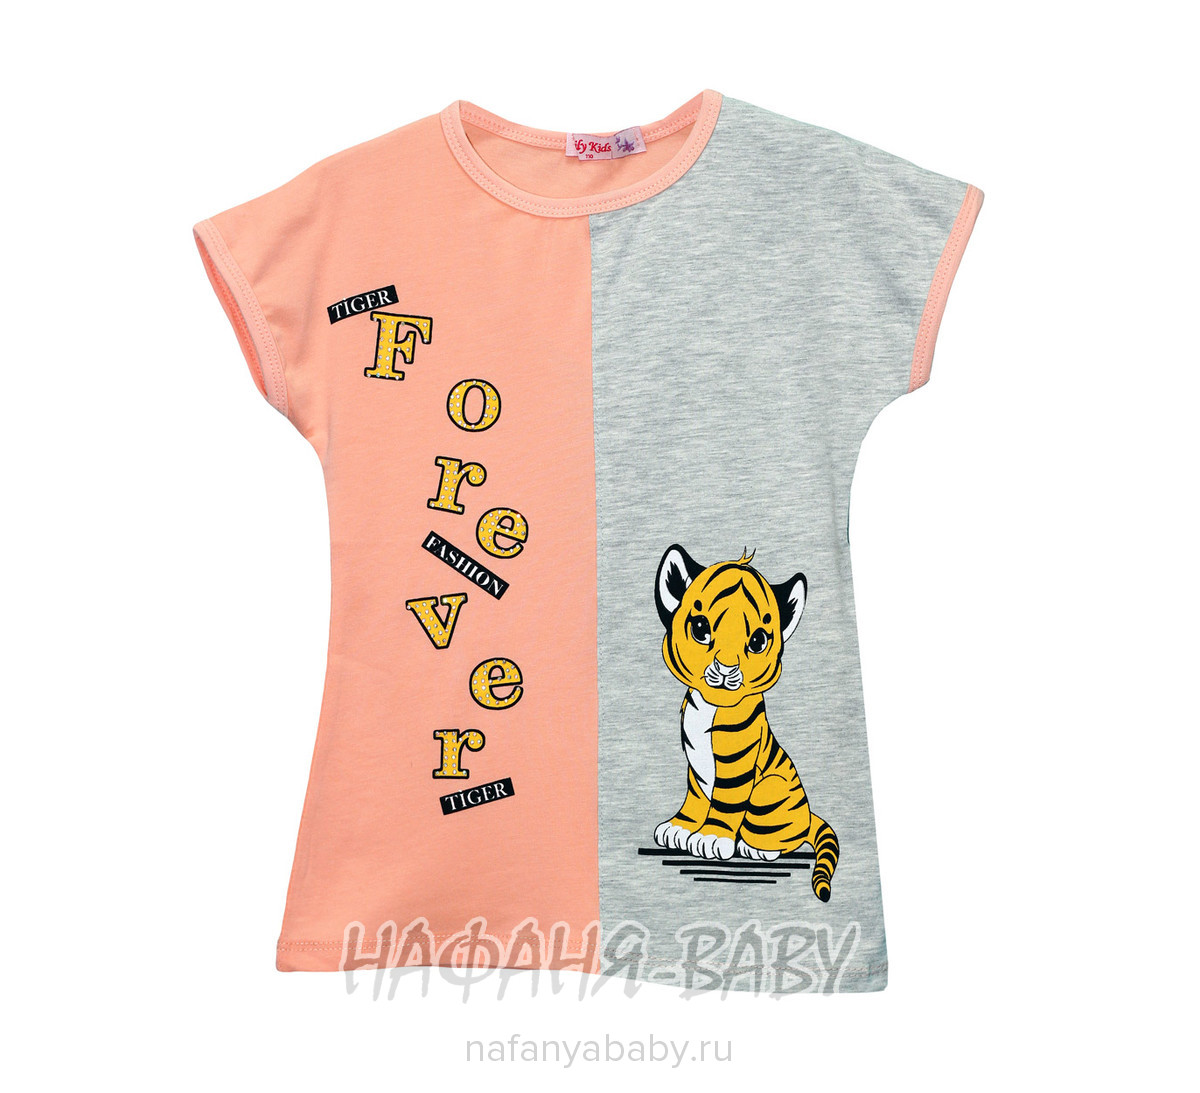 Детская футболка с принтом LILY Kids арт: 3611, 5-9 лет, цвет персиковый, оптом Турция